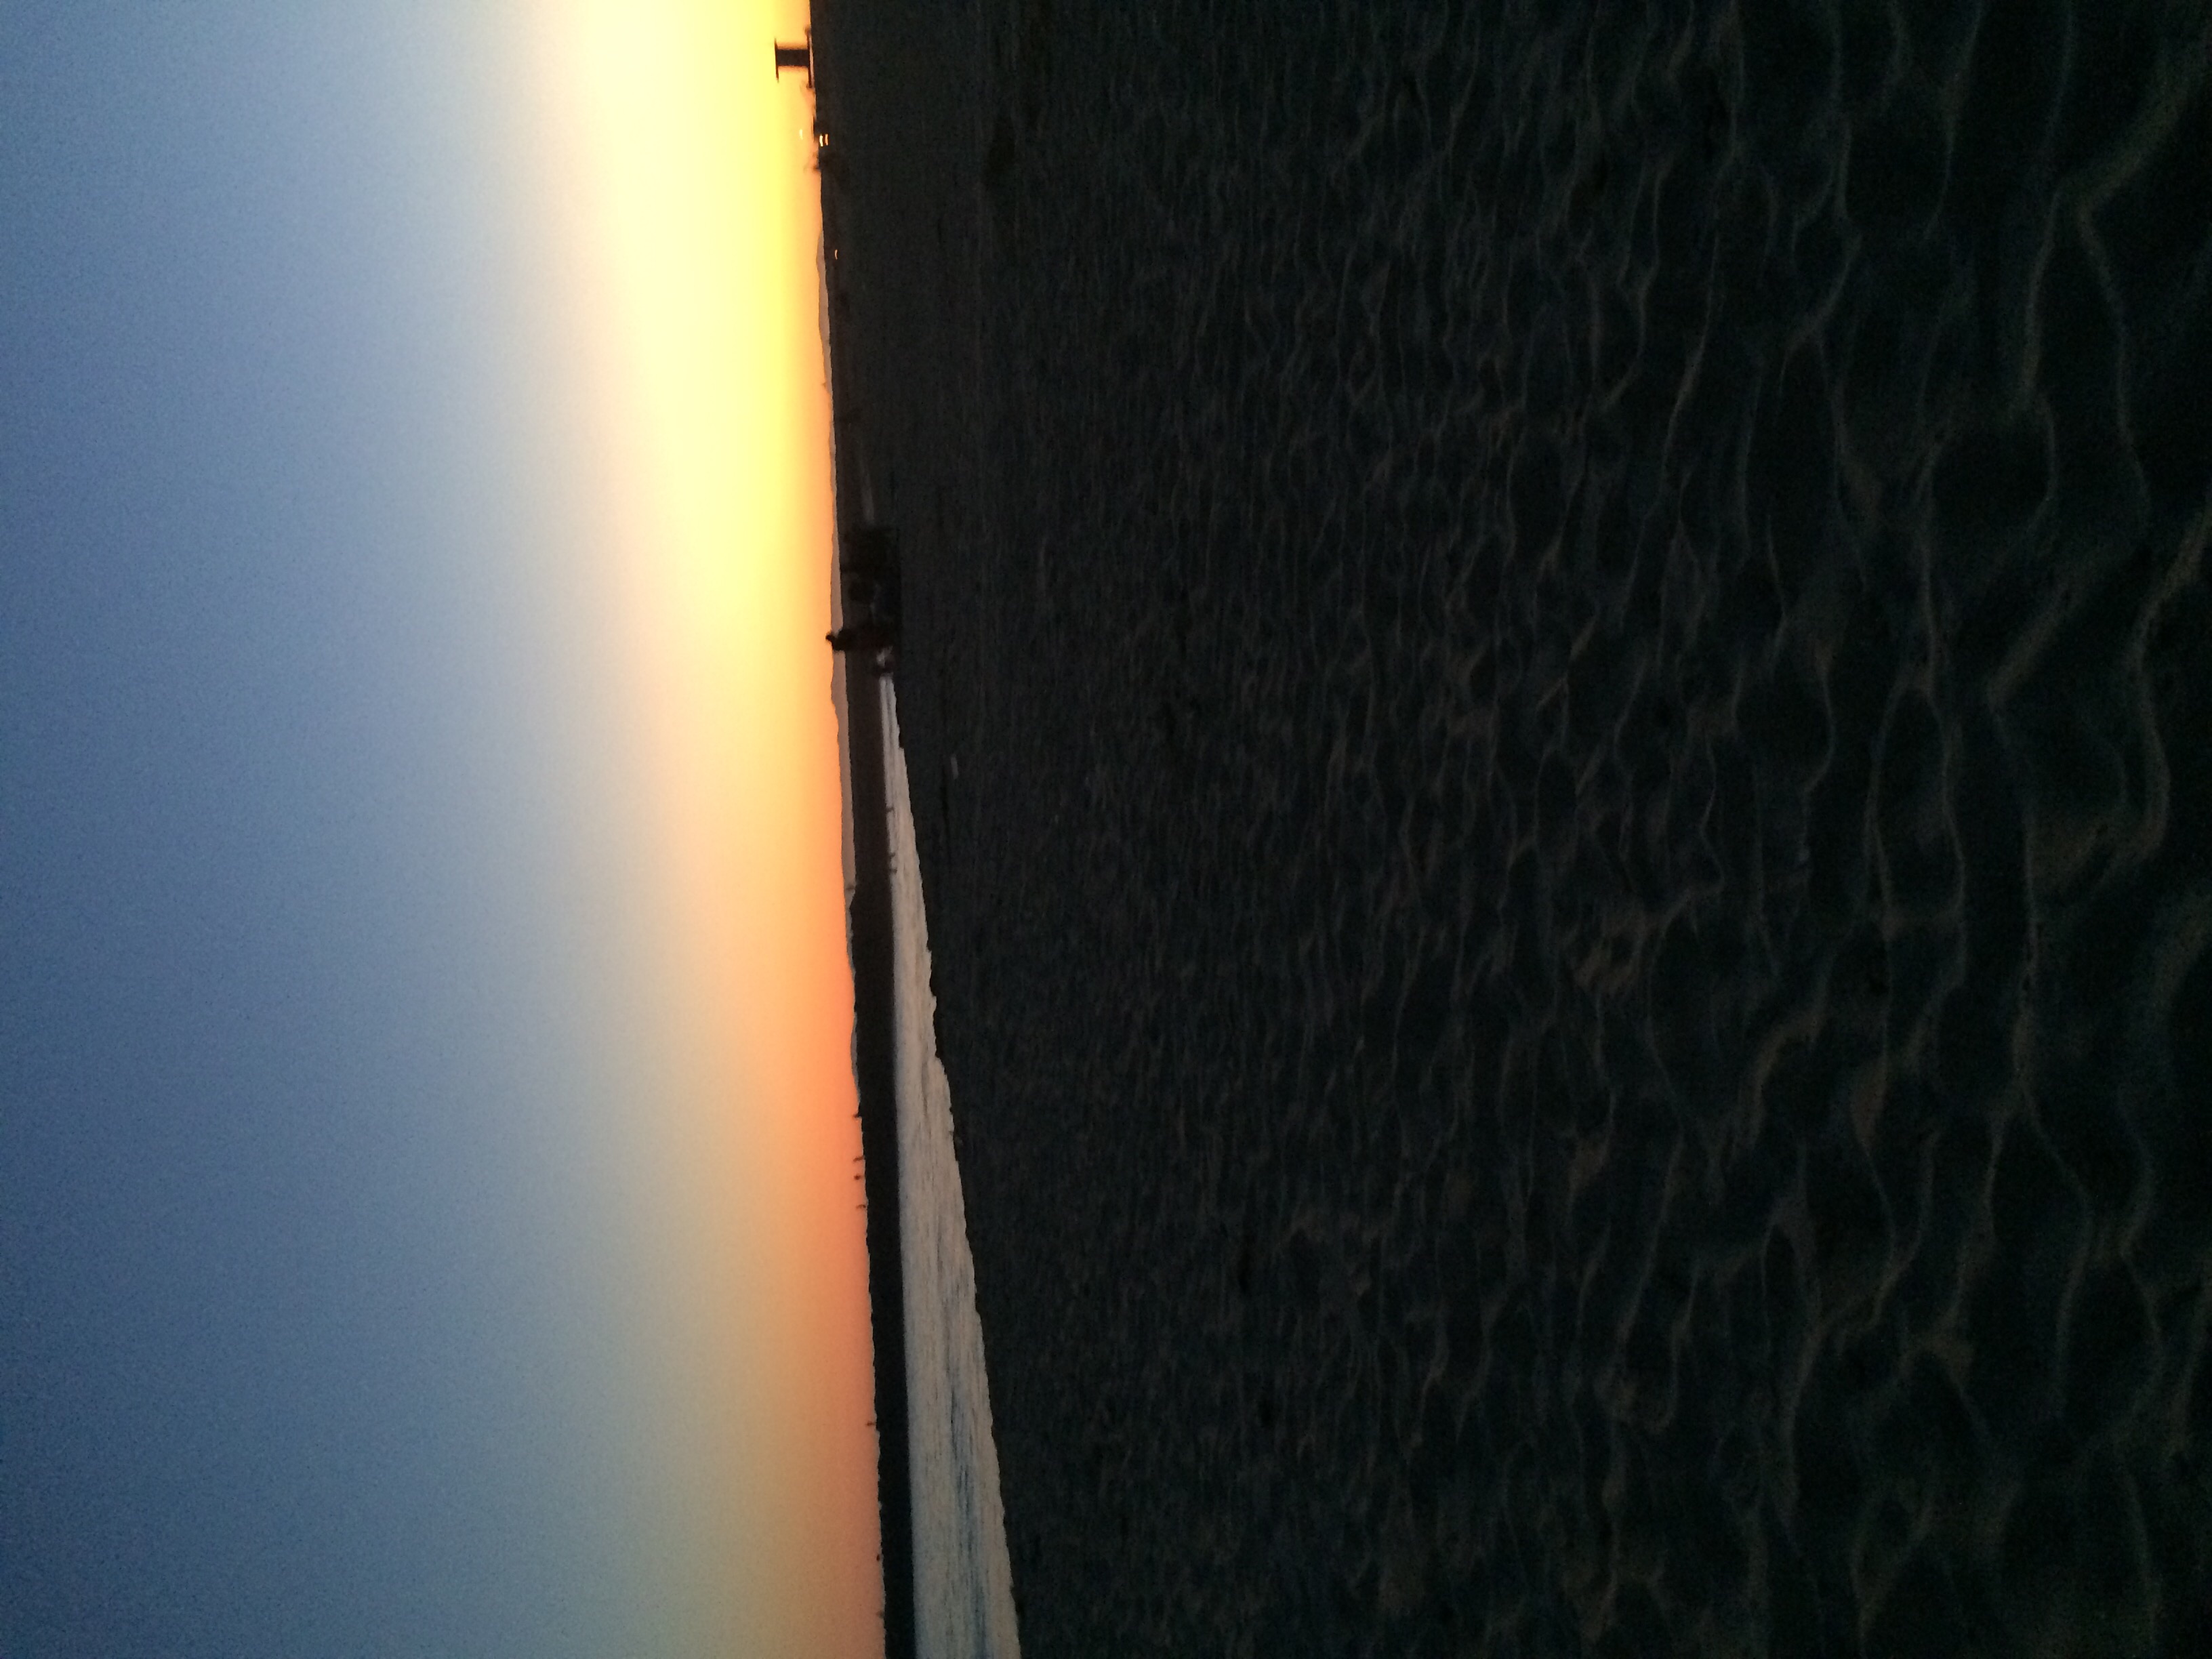  Sunset समुद्र तट